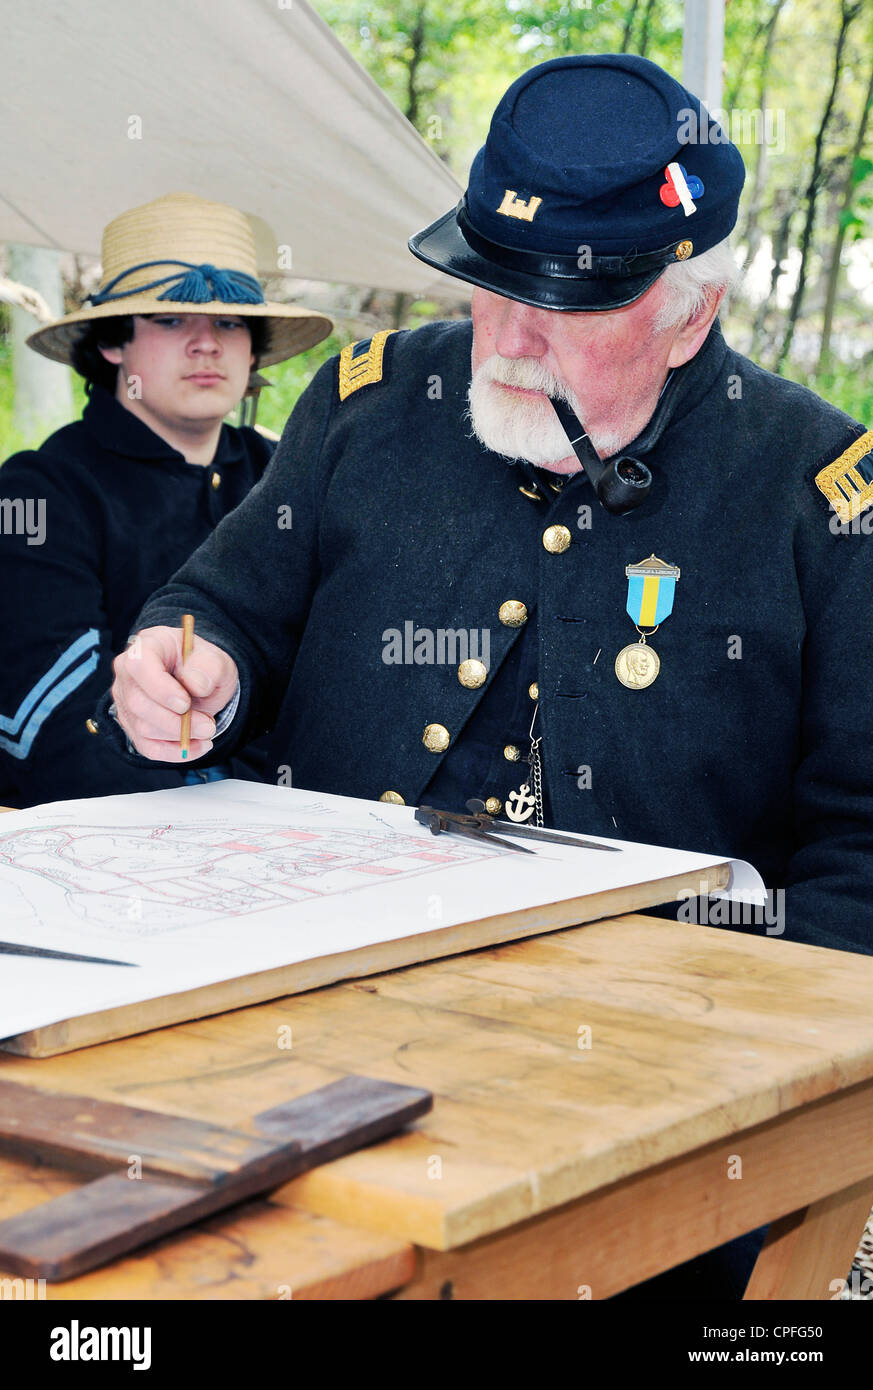 The Military engineer bent over drawings, Civil War reenactment, Bensalem, Pennsylvania, USA Stock Photo